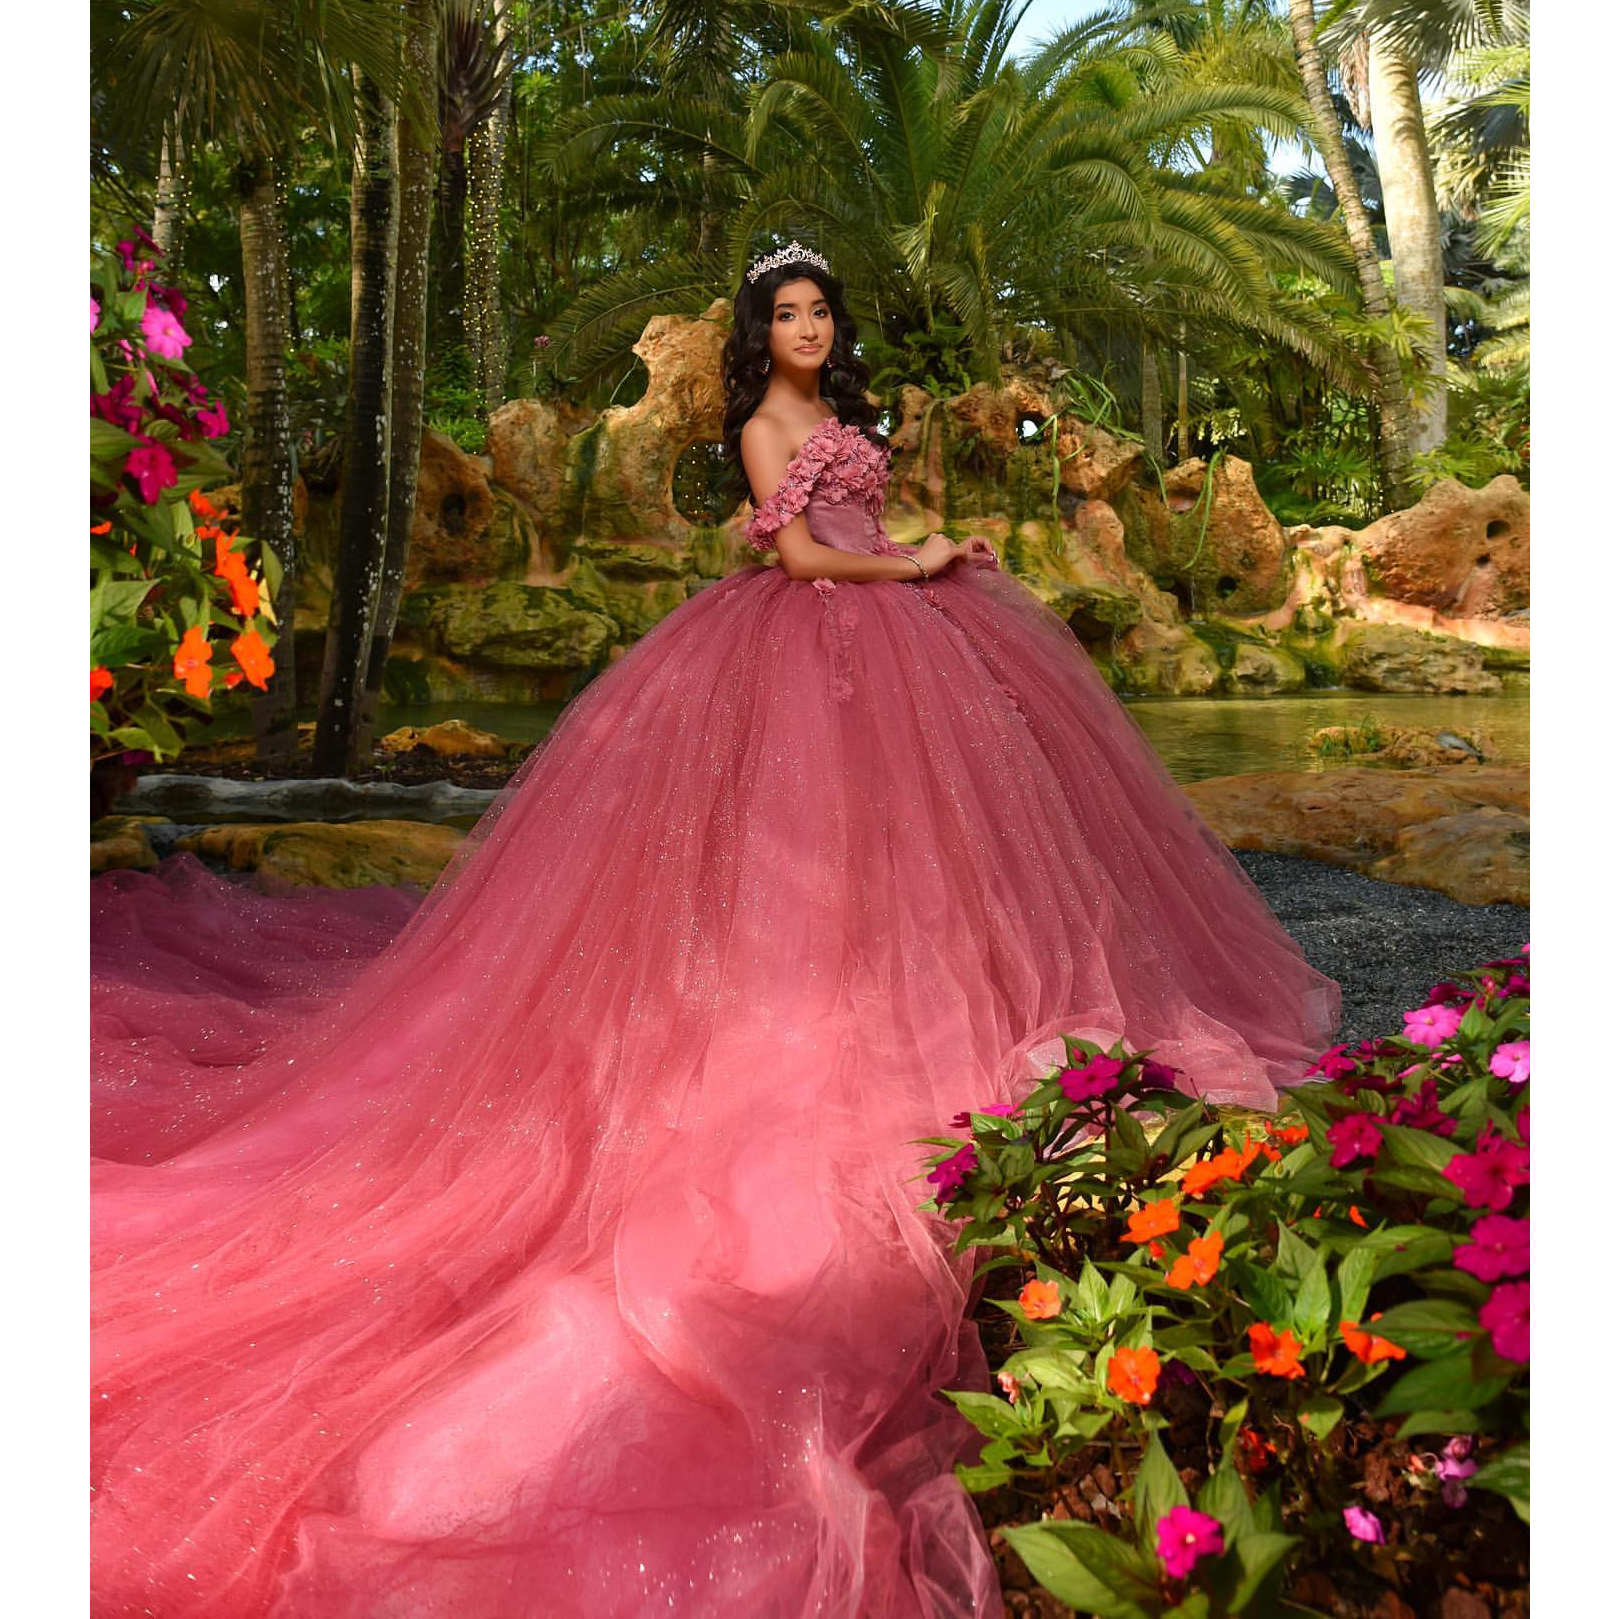 Robe de luxe rose Quinceanera chérie sur l'épaule Appliques longue traîne robe de fête d'anniversaire robes de soirée scintillantes Pageant